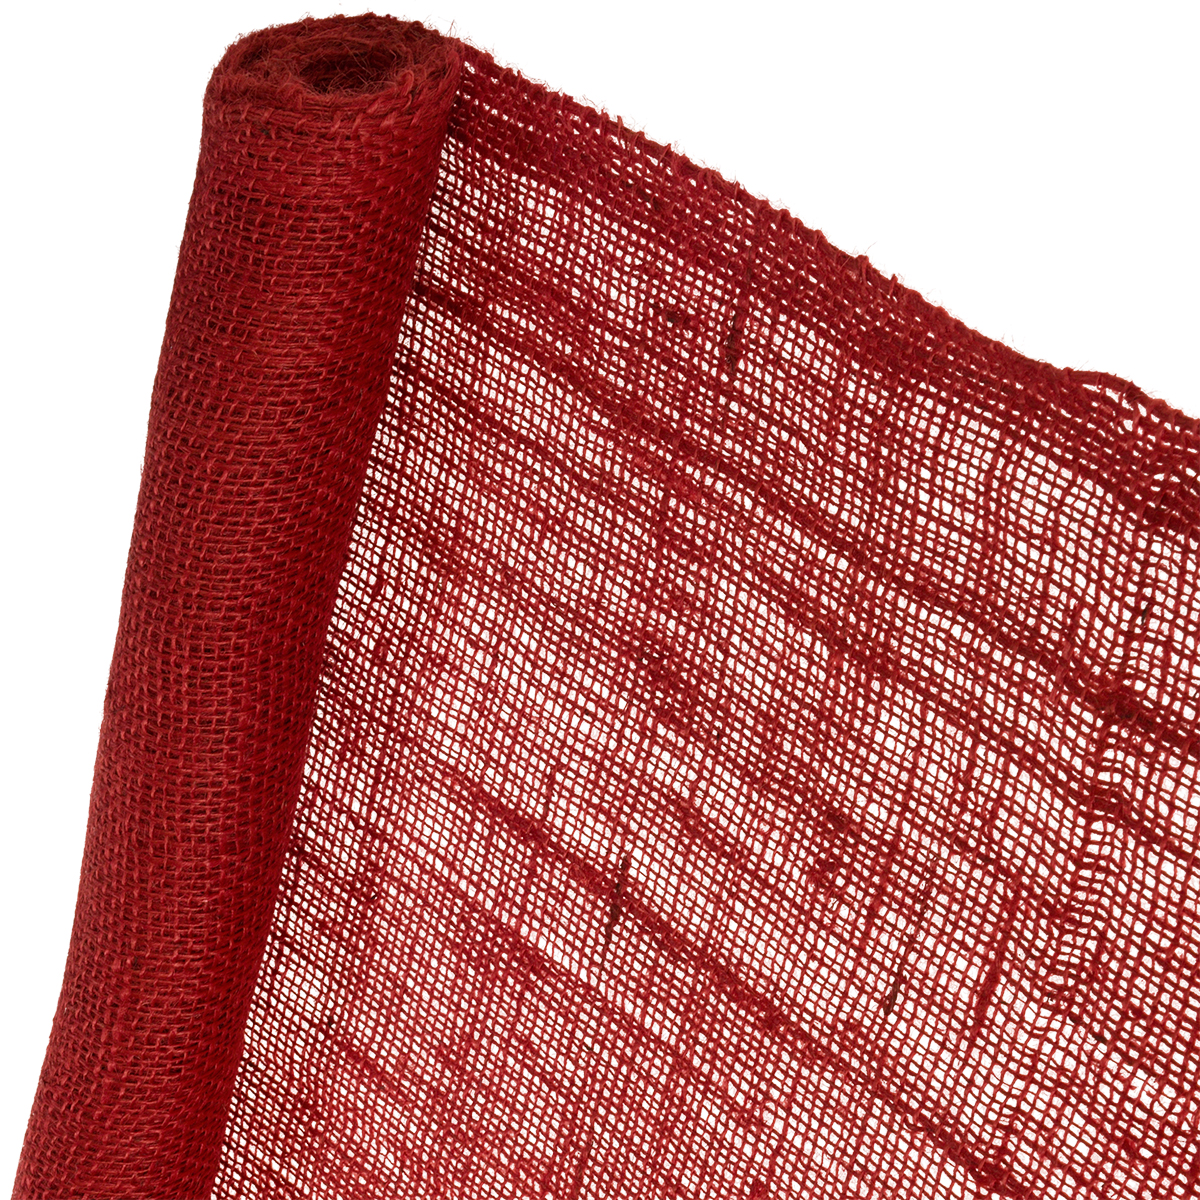 Jute-Schutzvlies rot 0,5m x 3m Jutegewebe Jute Dekoration Juteband Winterschutz